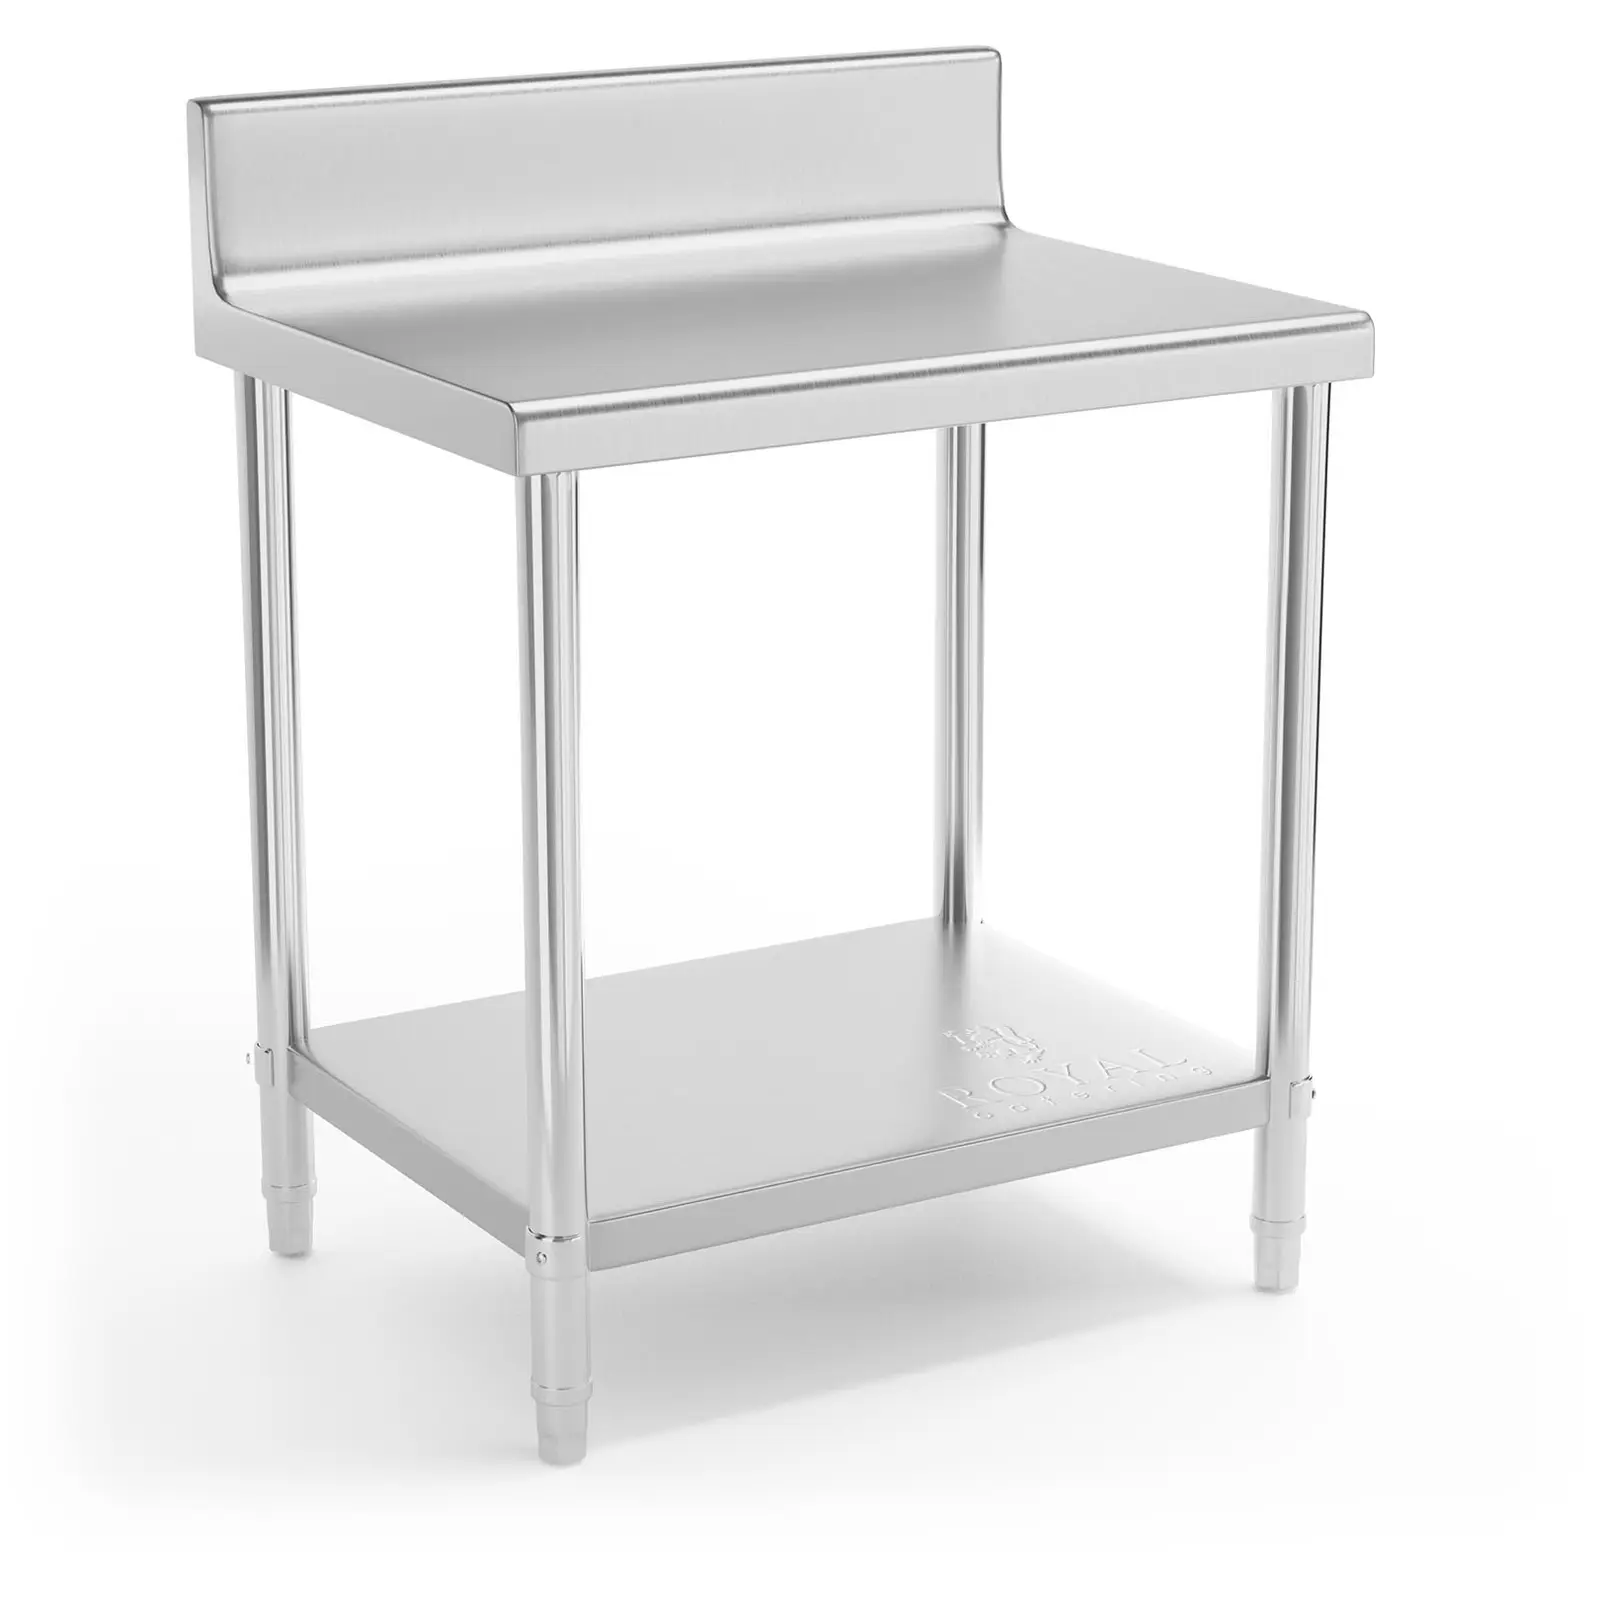 Pracovný stôl z nehrdzavejúcej ocele - 80 x 60 cm - lem - nosnosť 190 kg